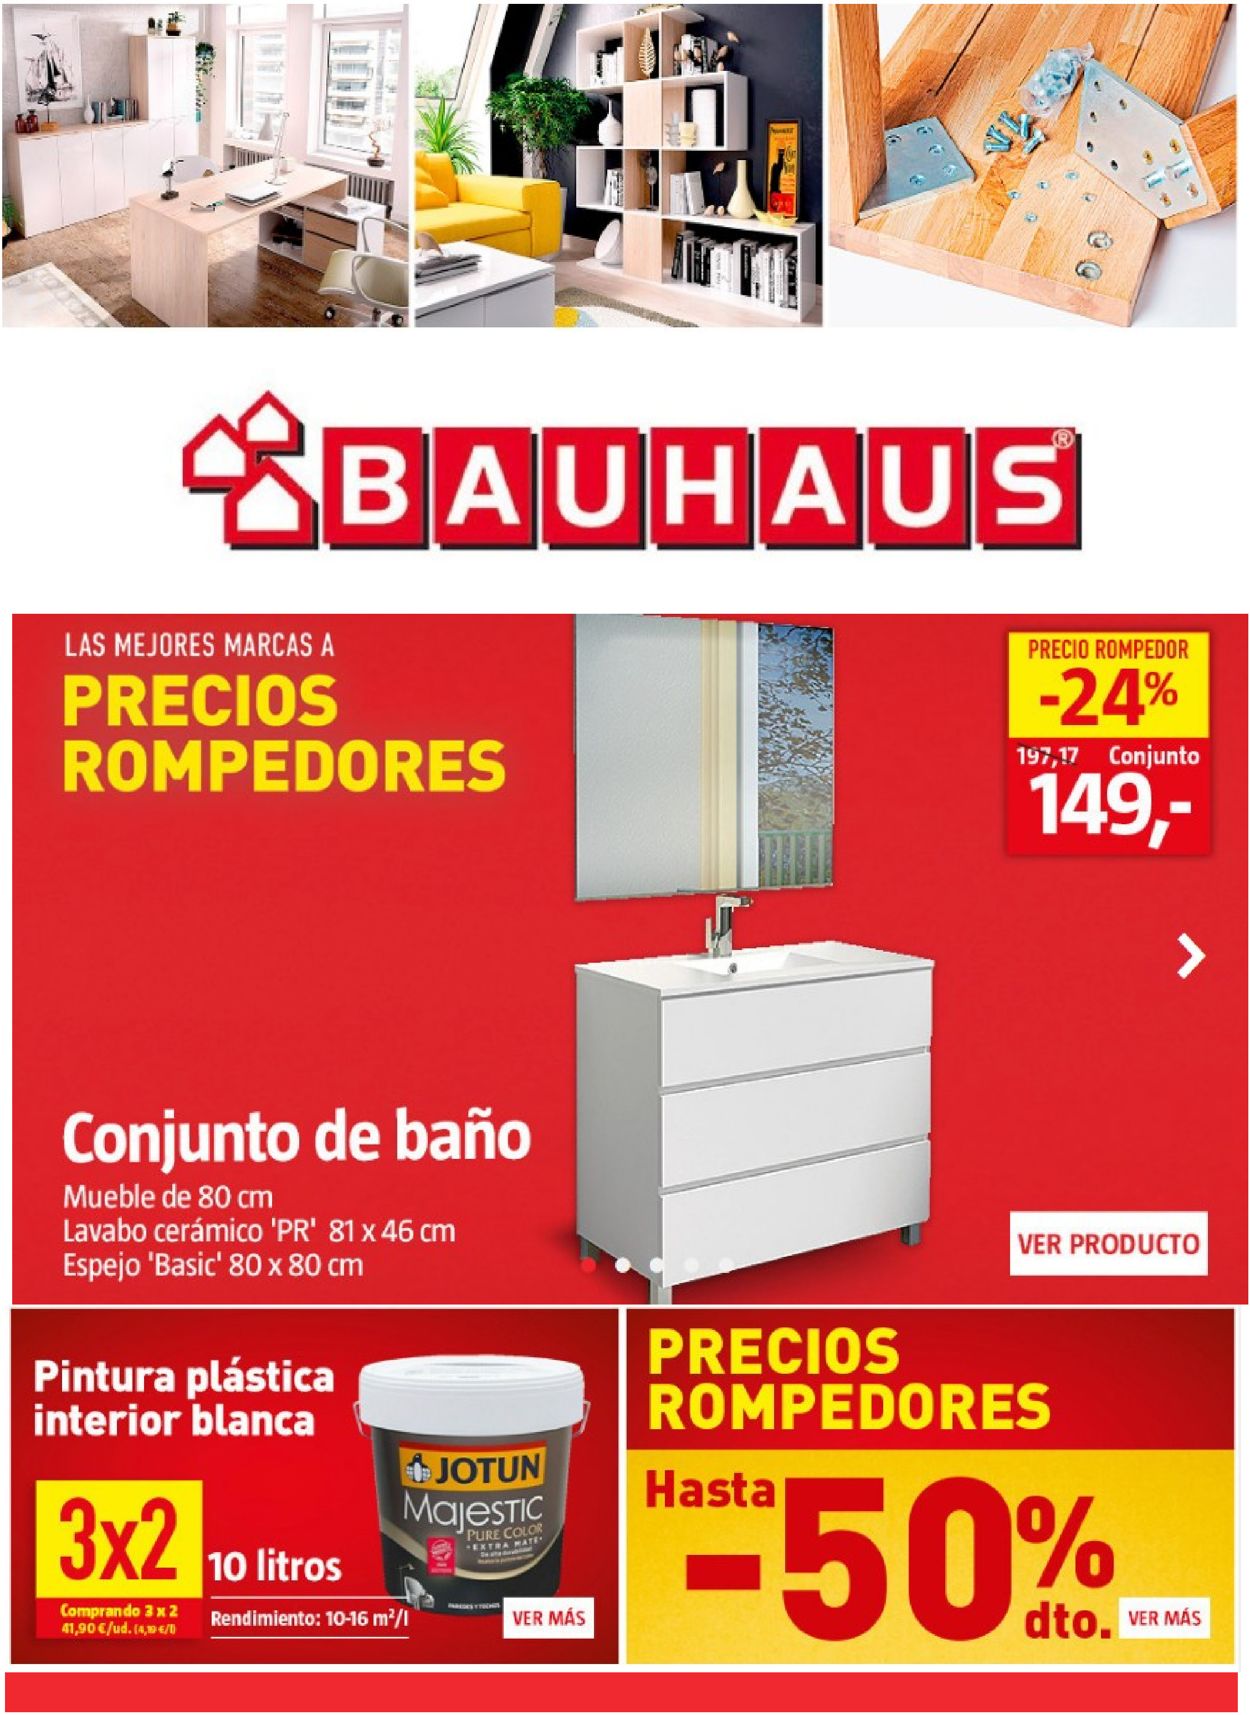 Catálogo Bauhaus - Actual 21.01 - 27.01.2021 | Rabato
